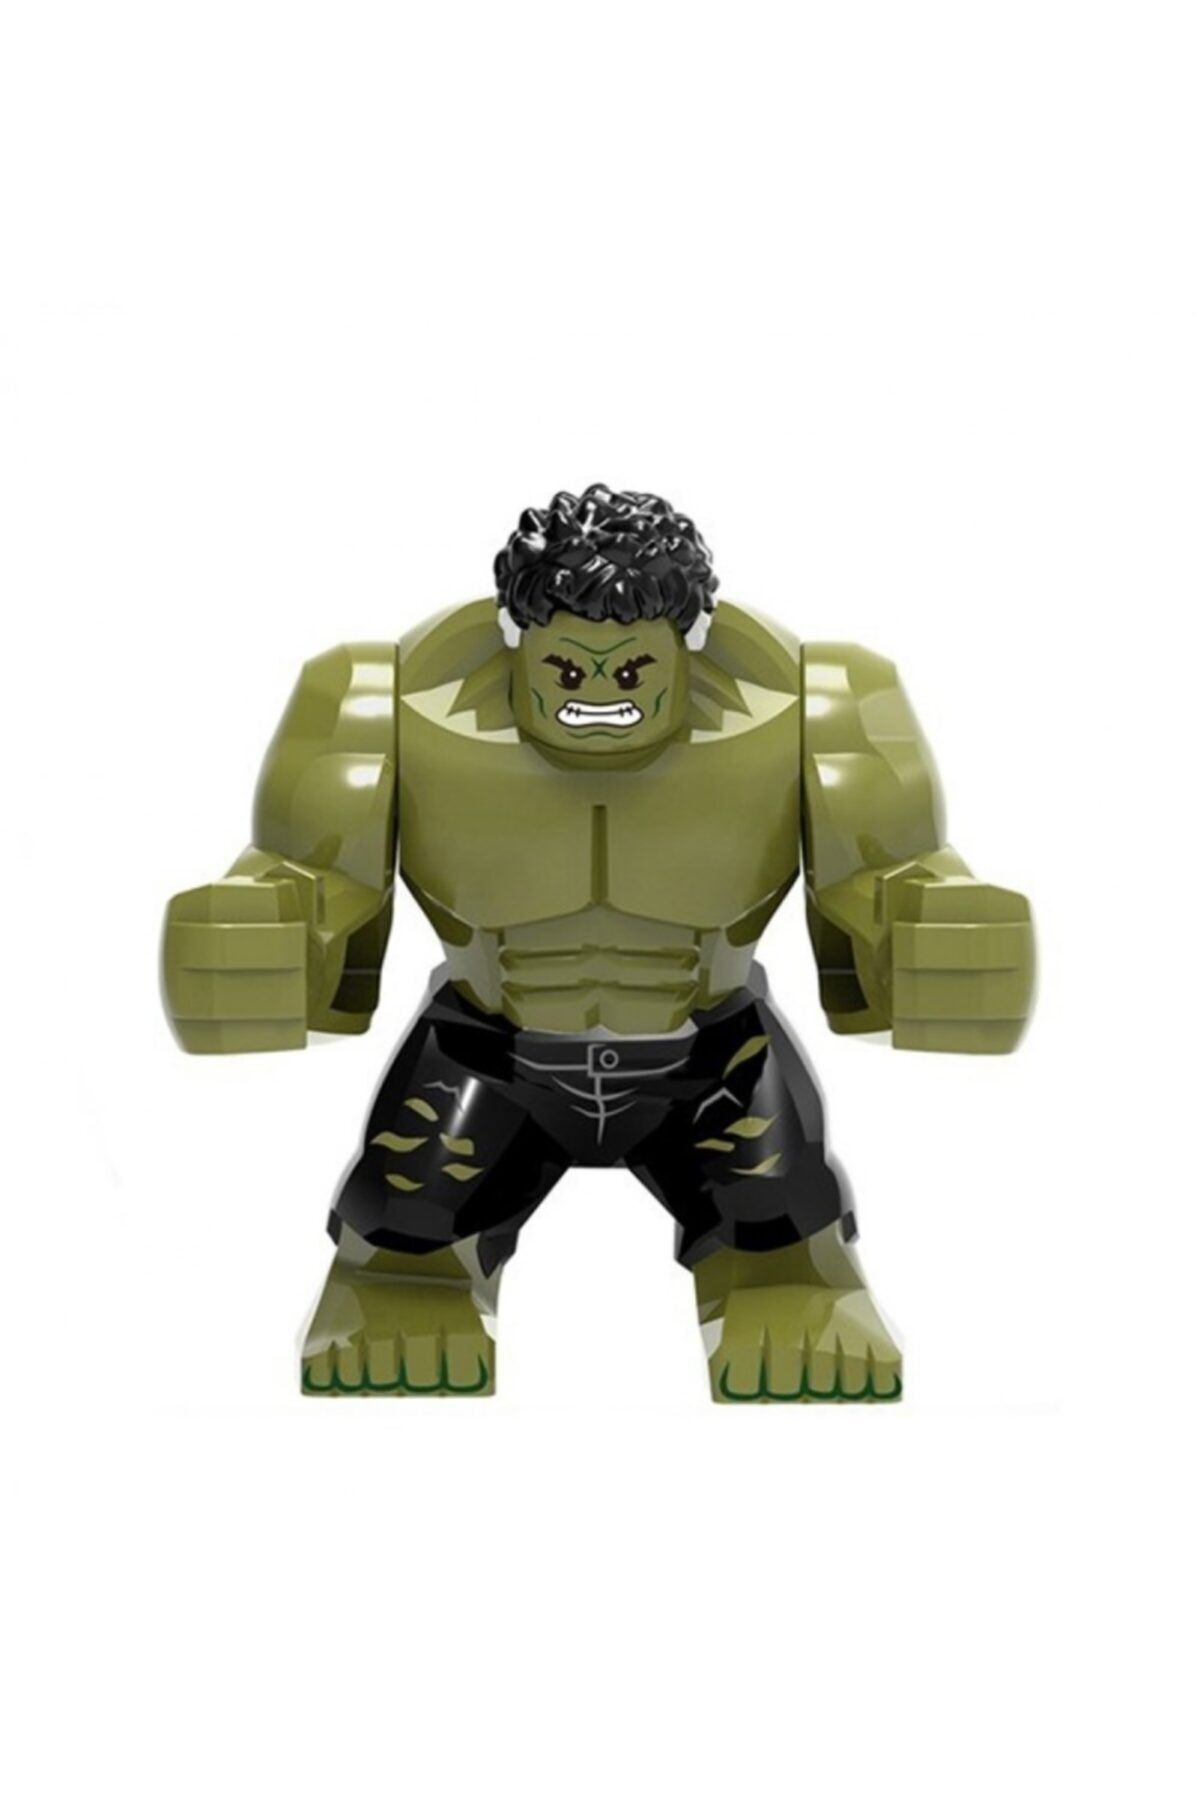 Lego Hulk - Toys & Hobbies - Aliexpress - The best lego hulk